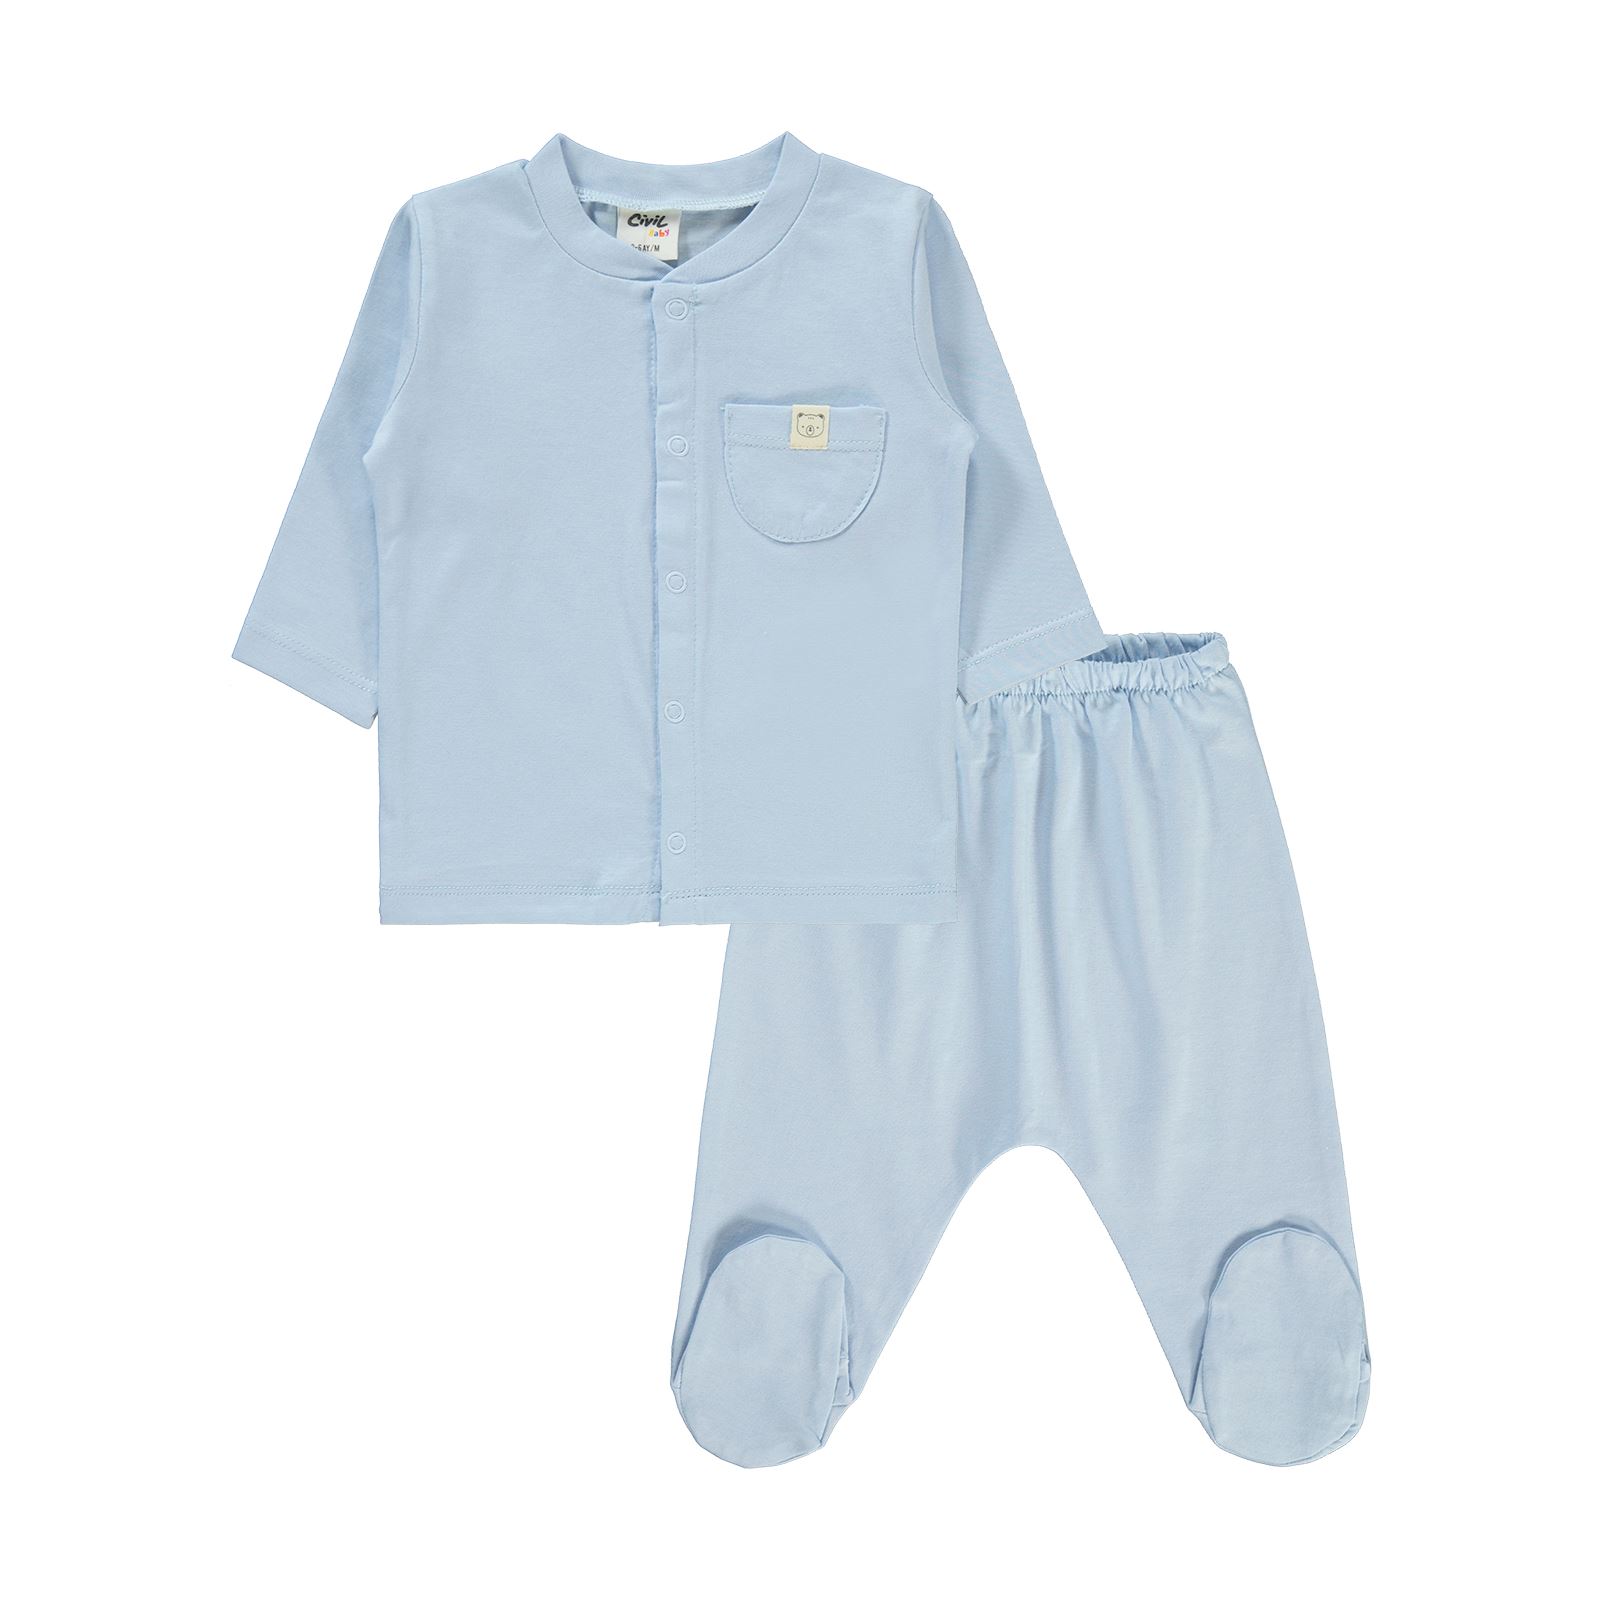 Civil Baby Bebek Pijama Takımı 1-6 Ay Bebe Mavi